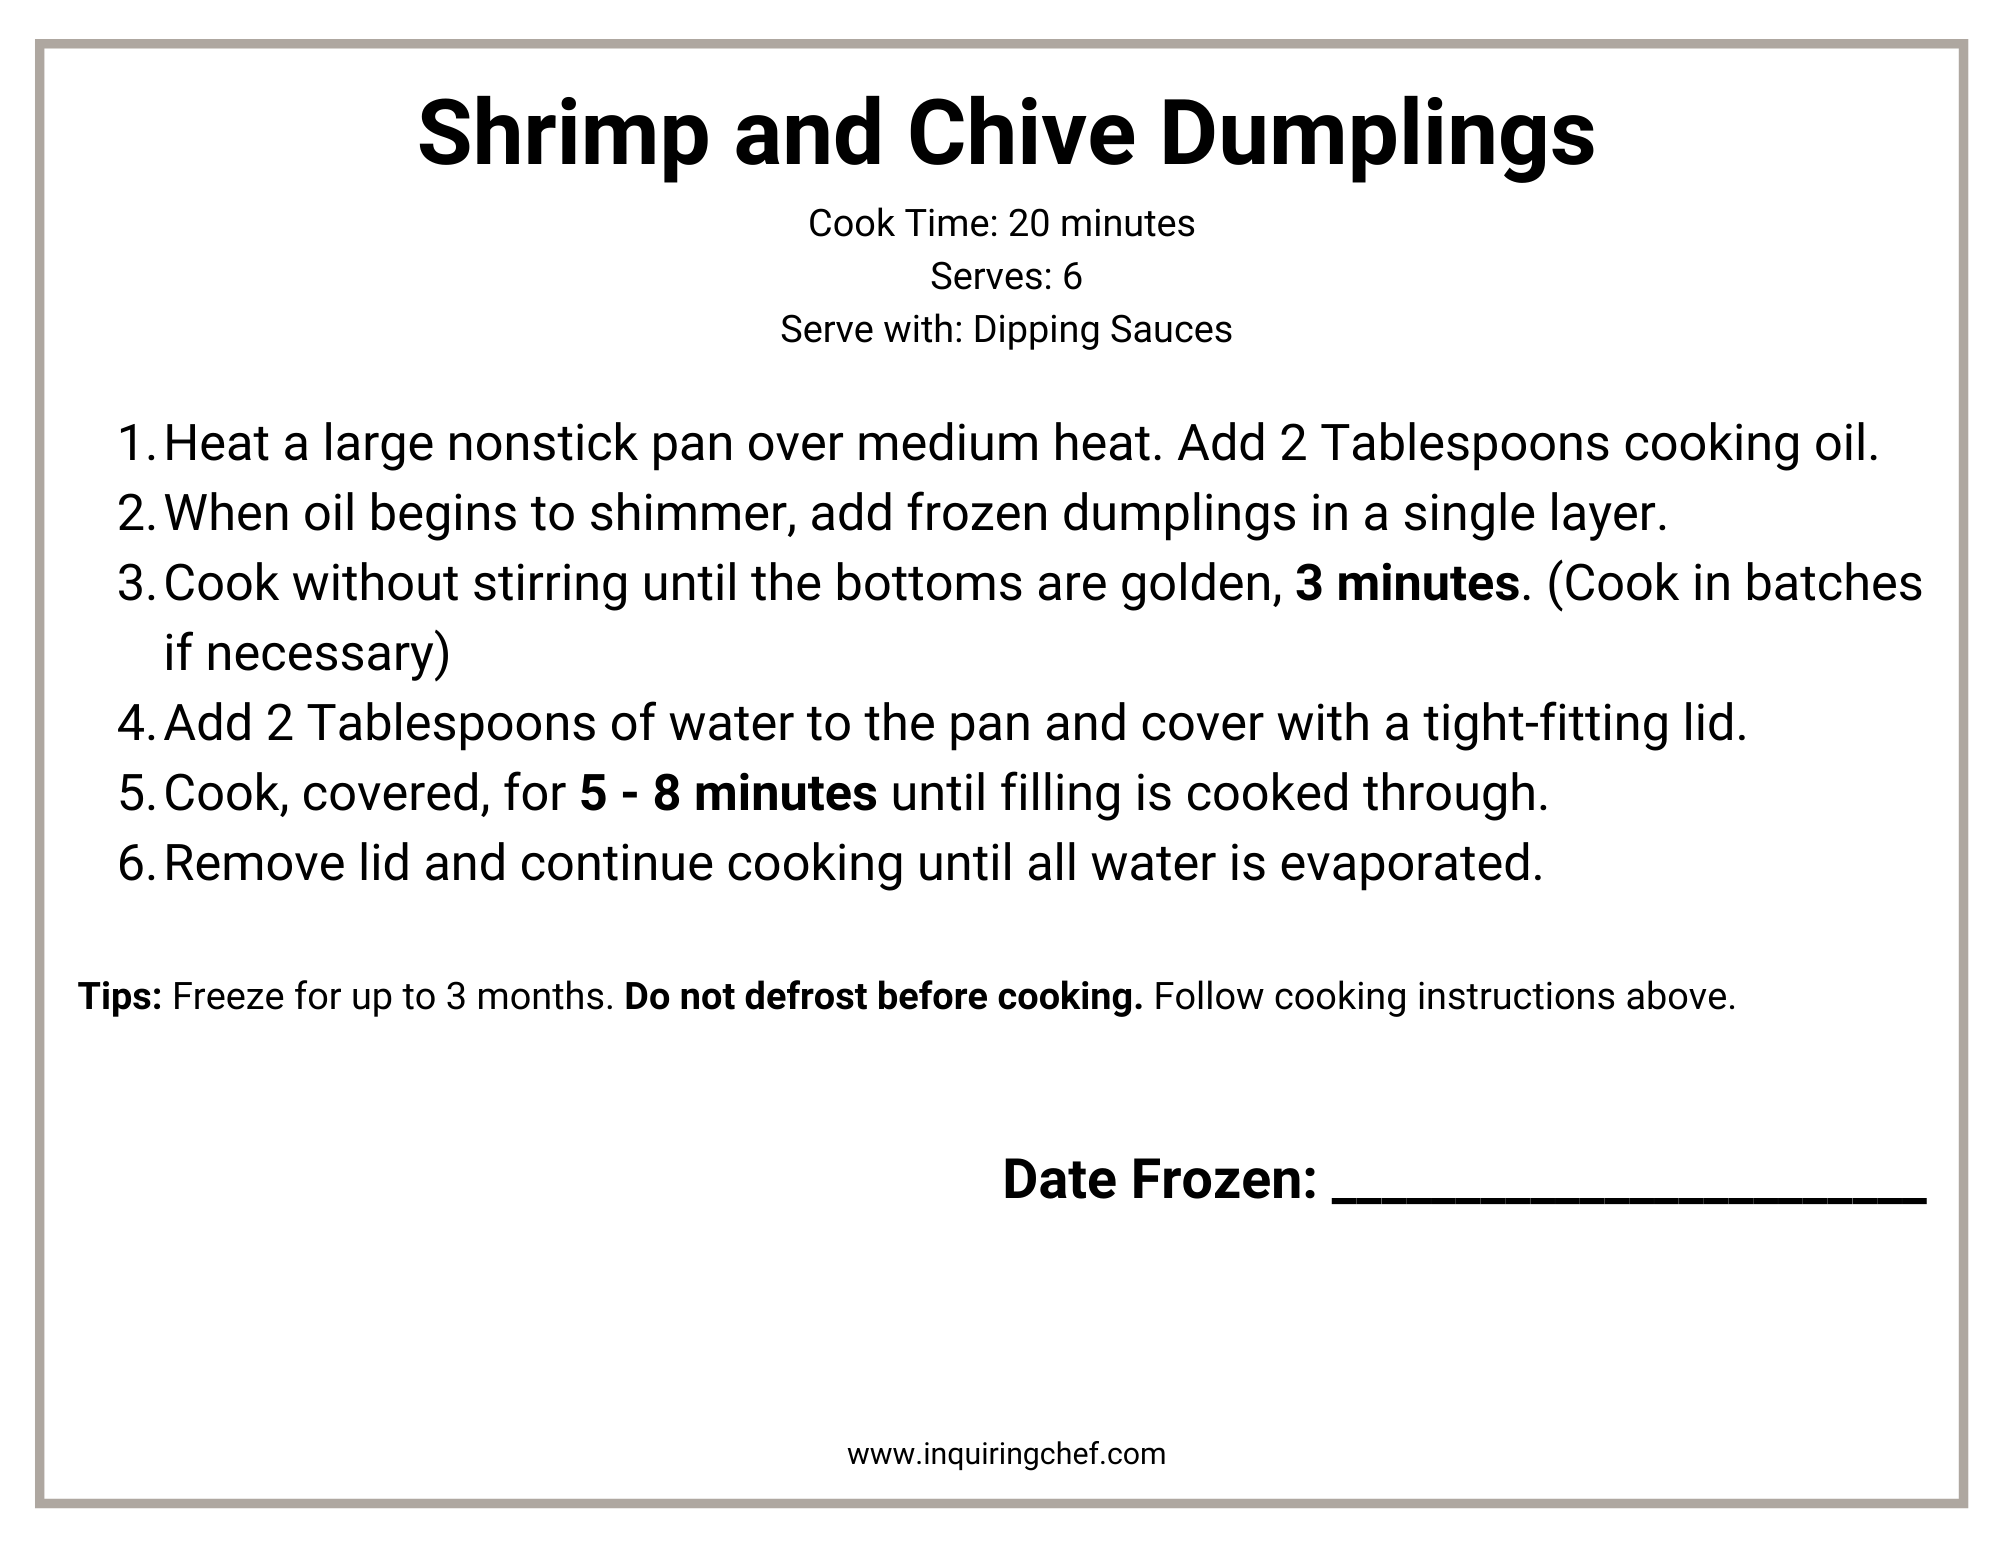 shrimp and chive dumpling freezer label